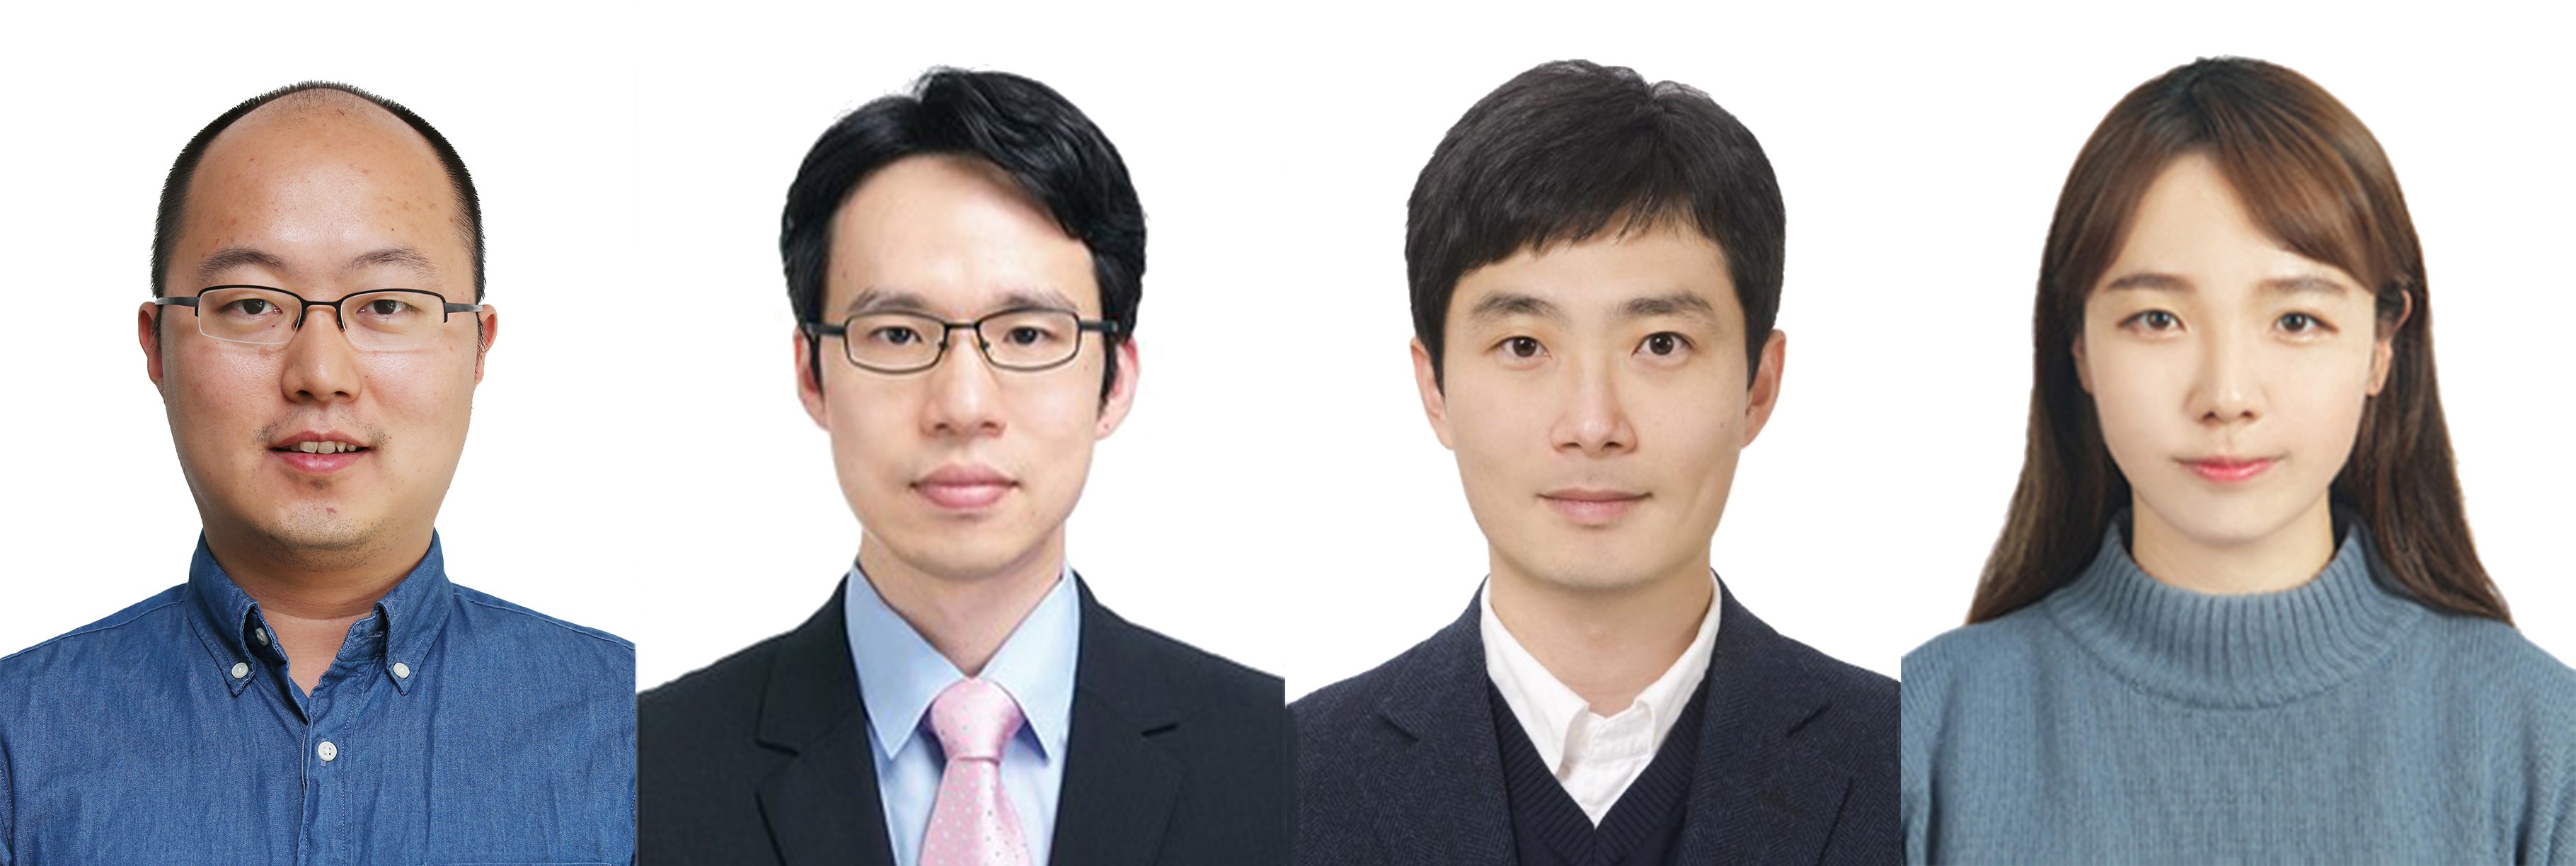 (왼쪽부터) 박용근 교수, 신종화 교수, 유홍기 교수, 김세정 박사